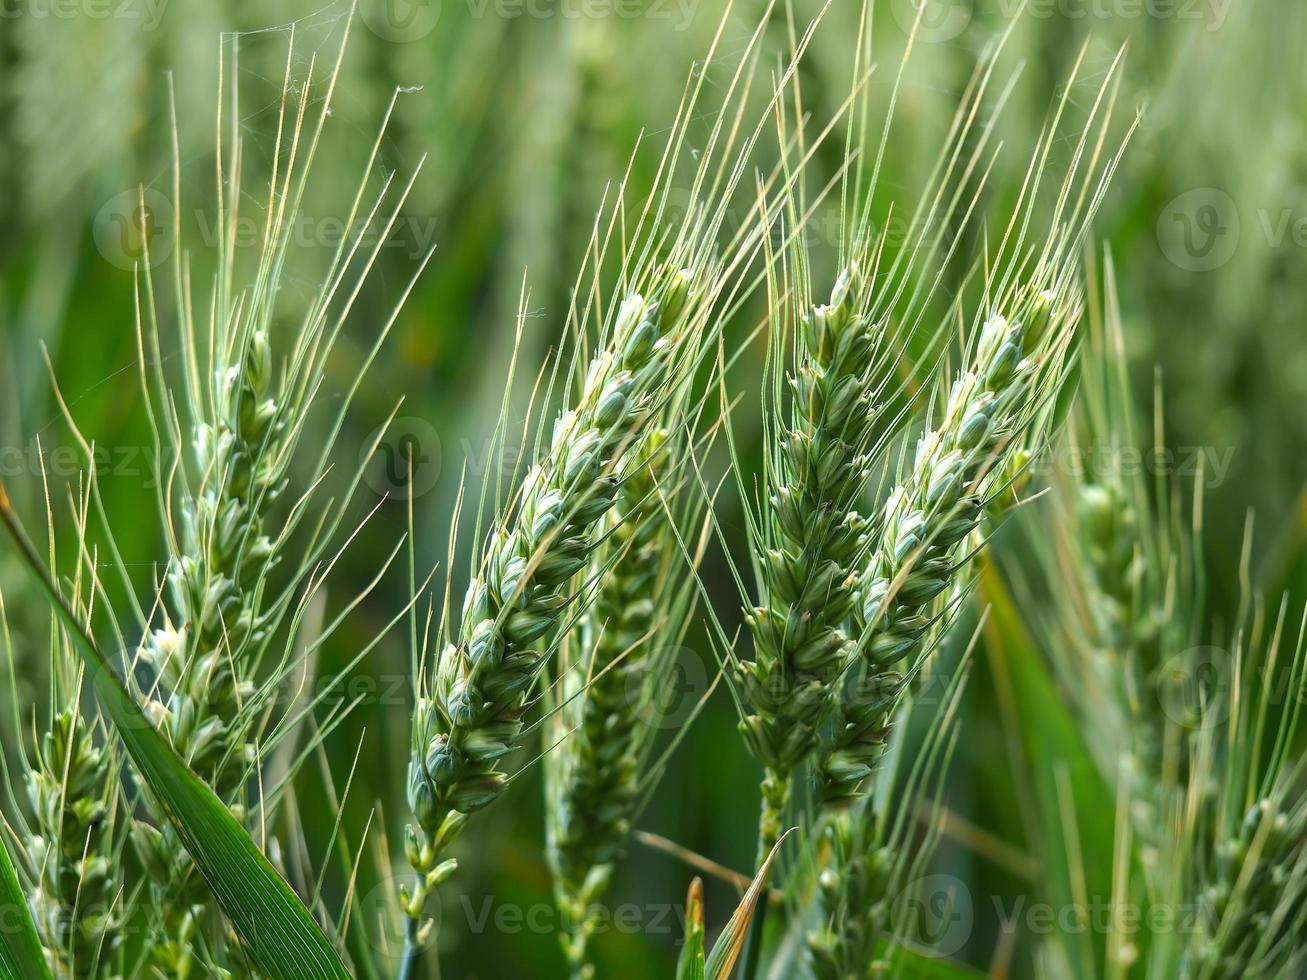 Wheat ears in a summer wheat field photo